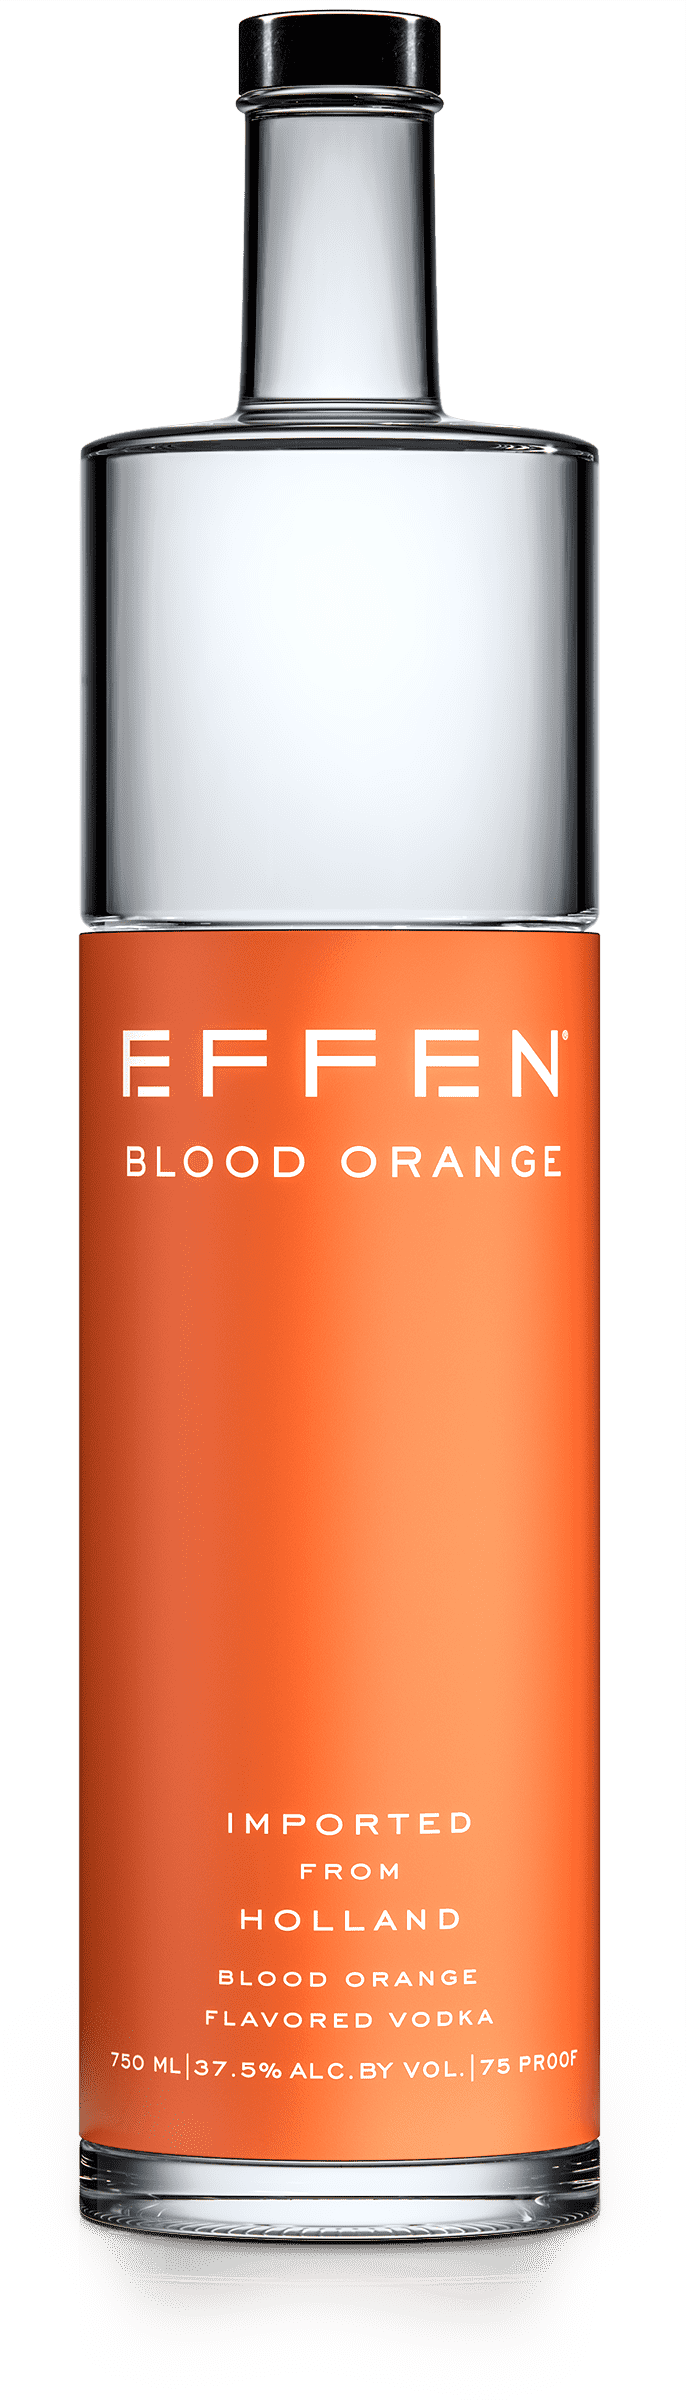 EFFEN Blood Orange Vodka bottle shot